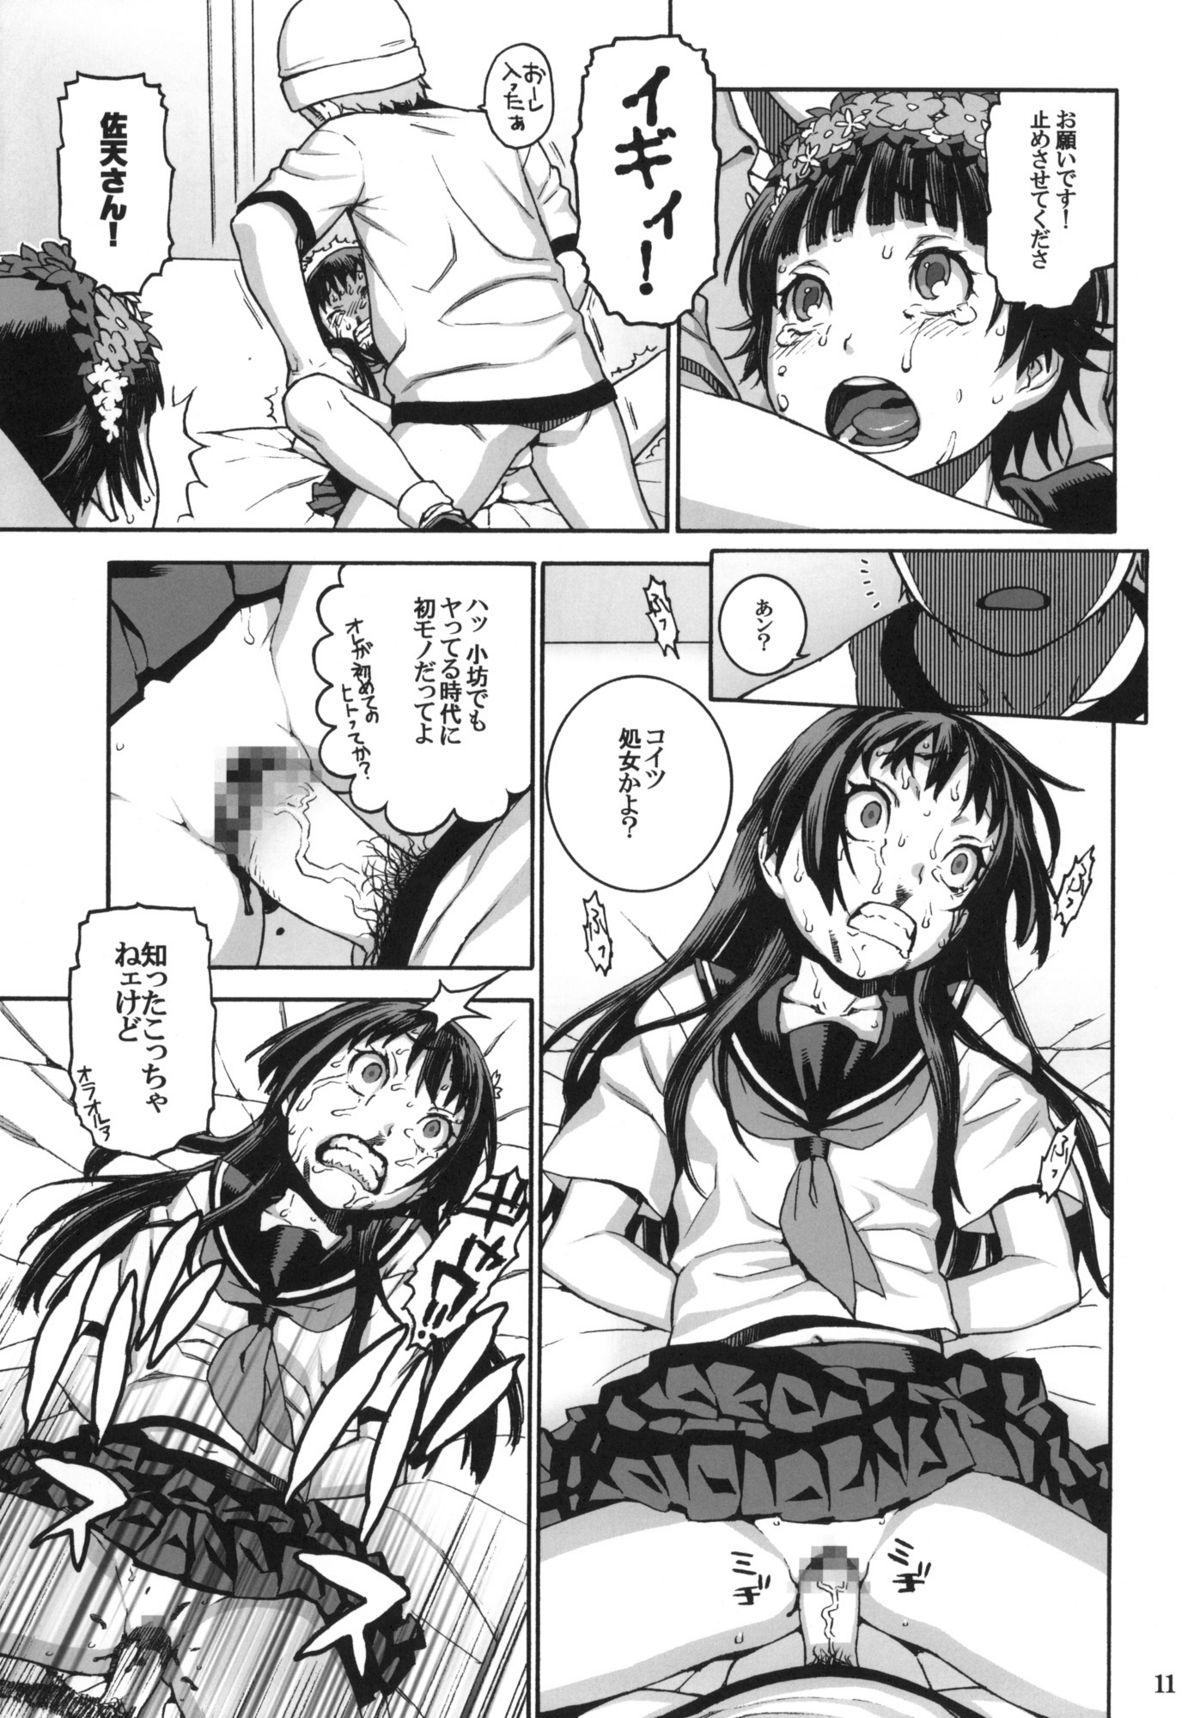 Sextoys Toaru Jiken no Heroines - Toaru kagaku no railgun Comedor - Page 10